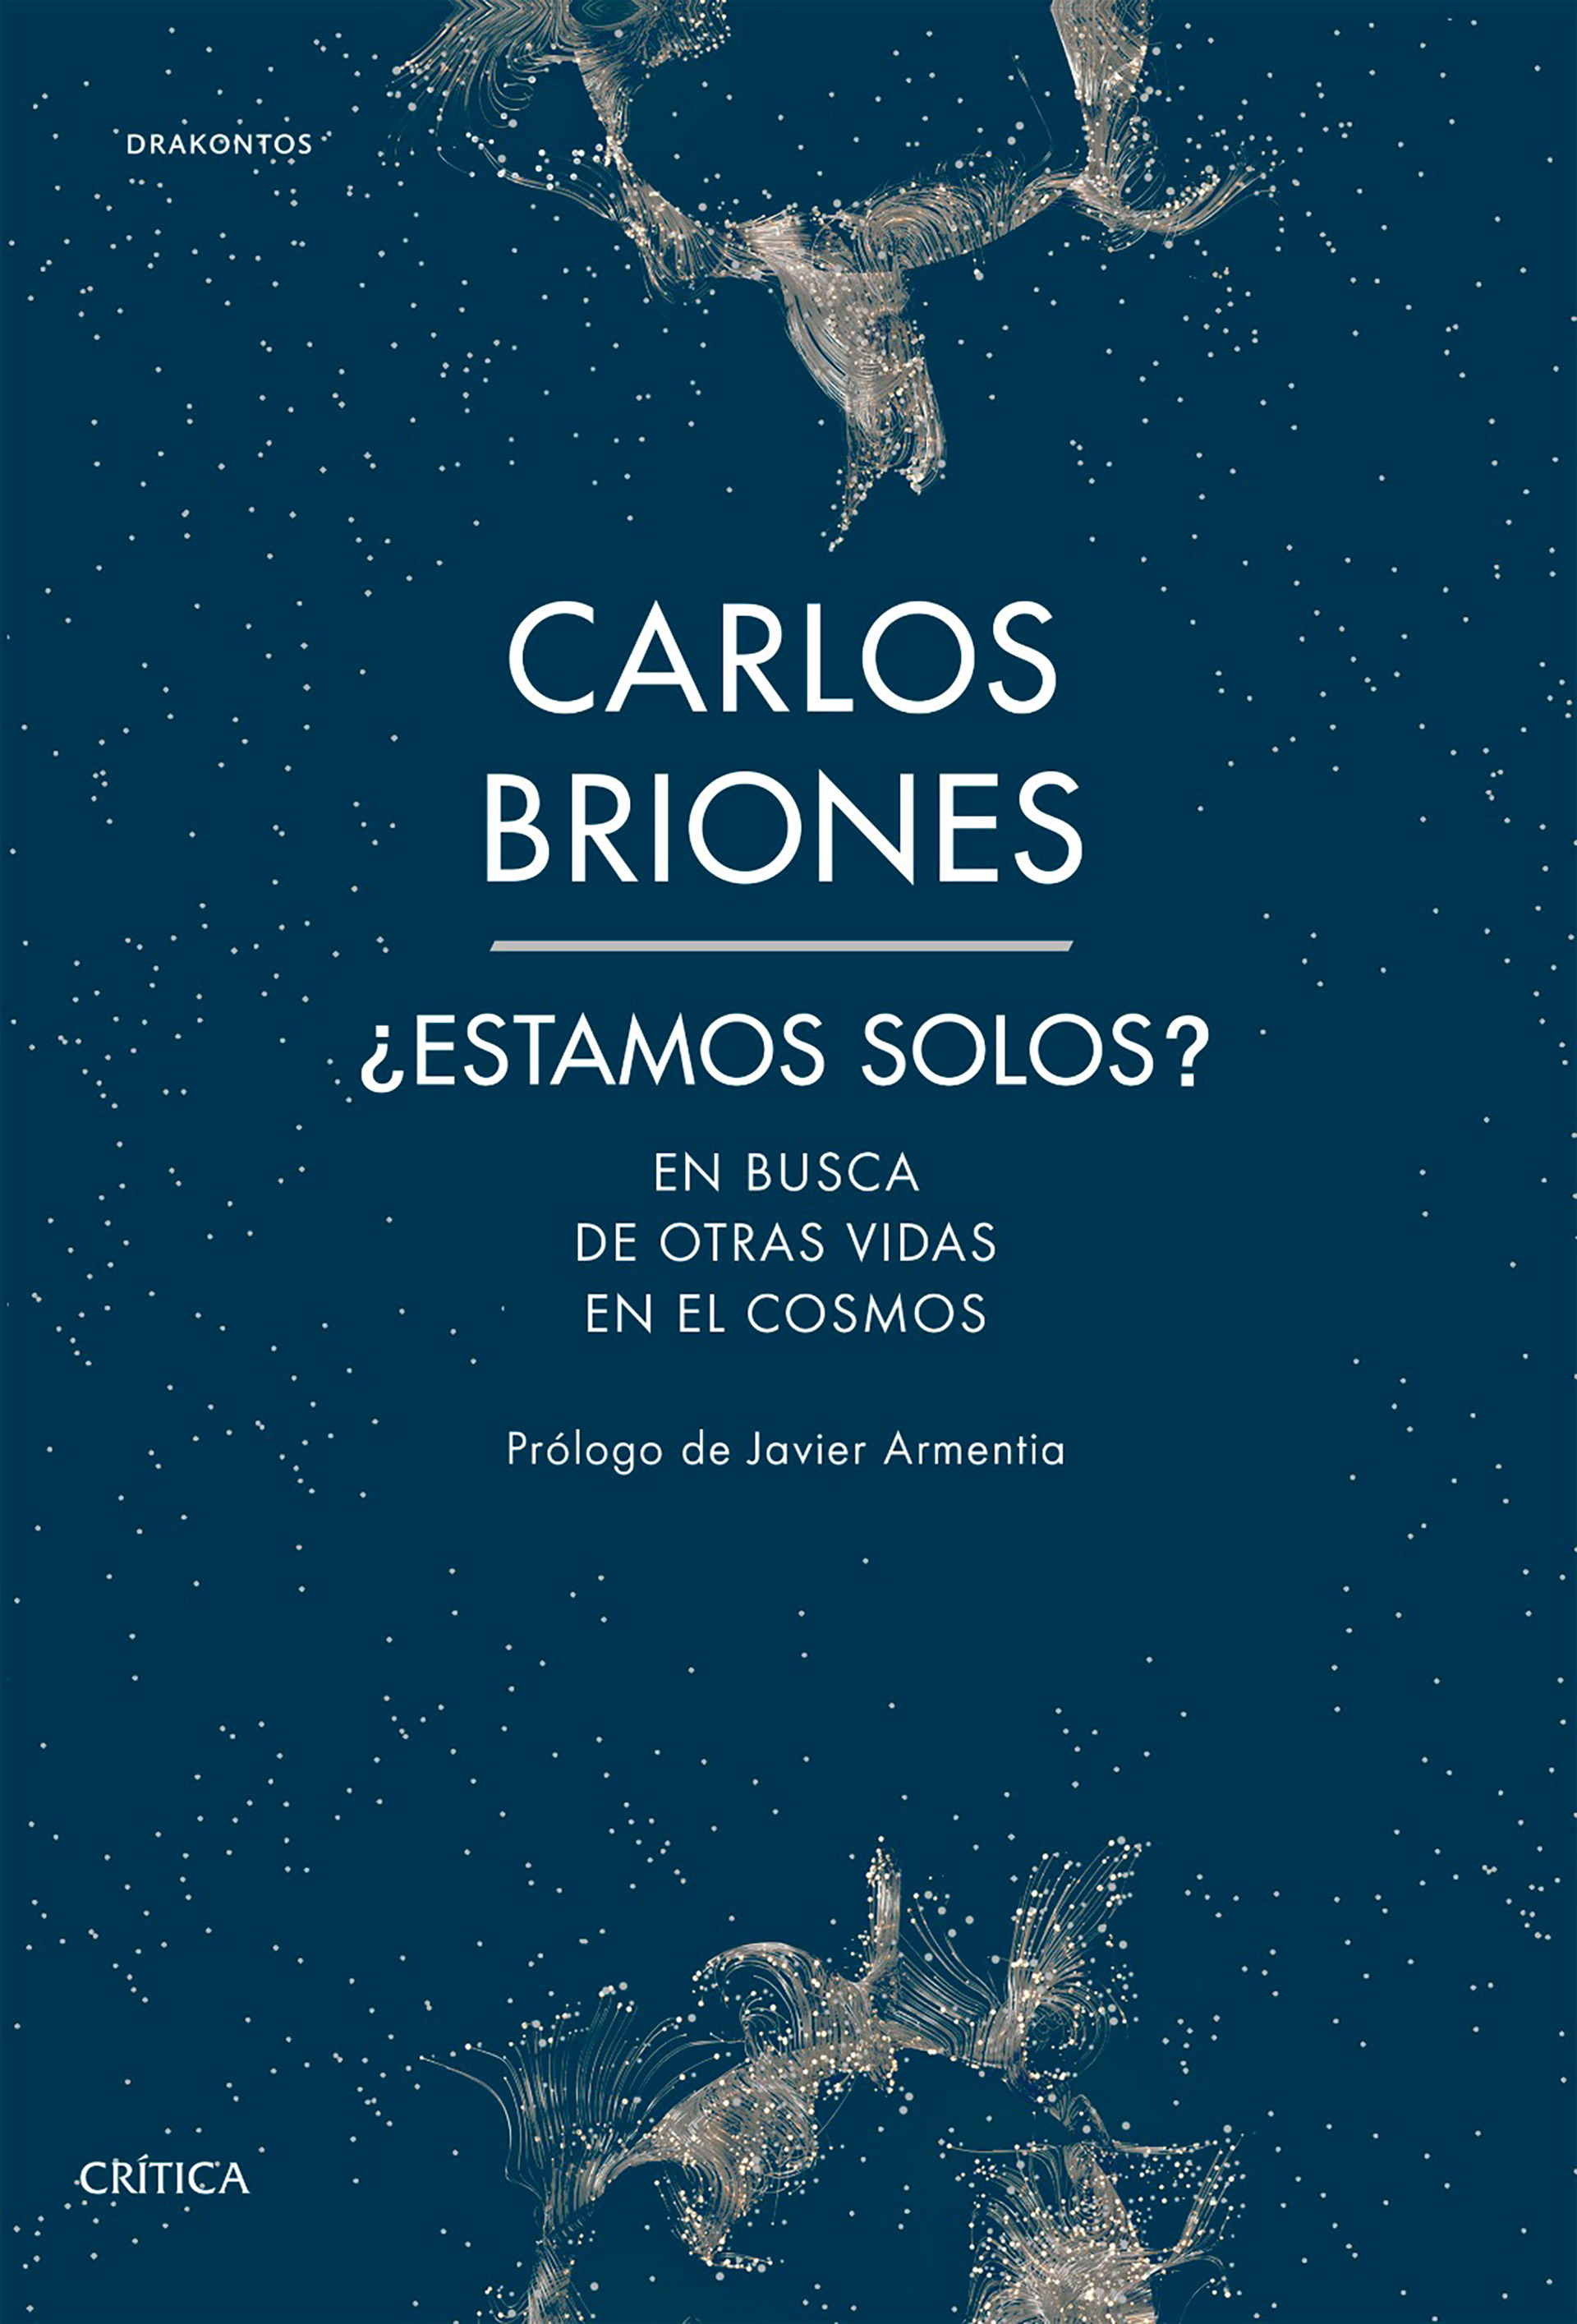 Briones vino a Buenos Aires para presentar su último libro “¿Estamos solos? En busca de otras vidas en el cosmos”